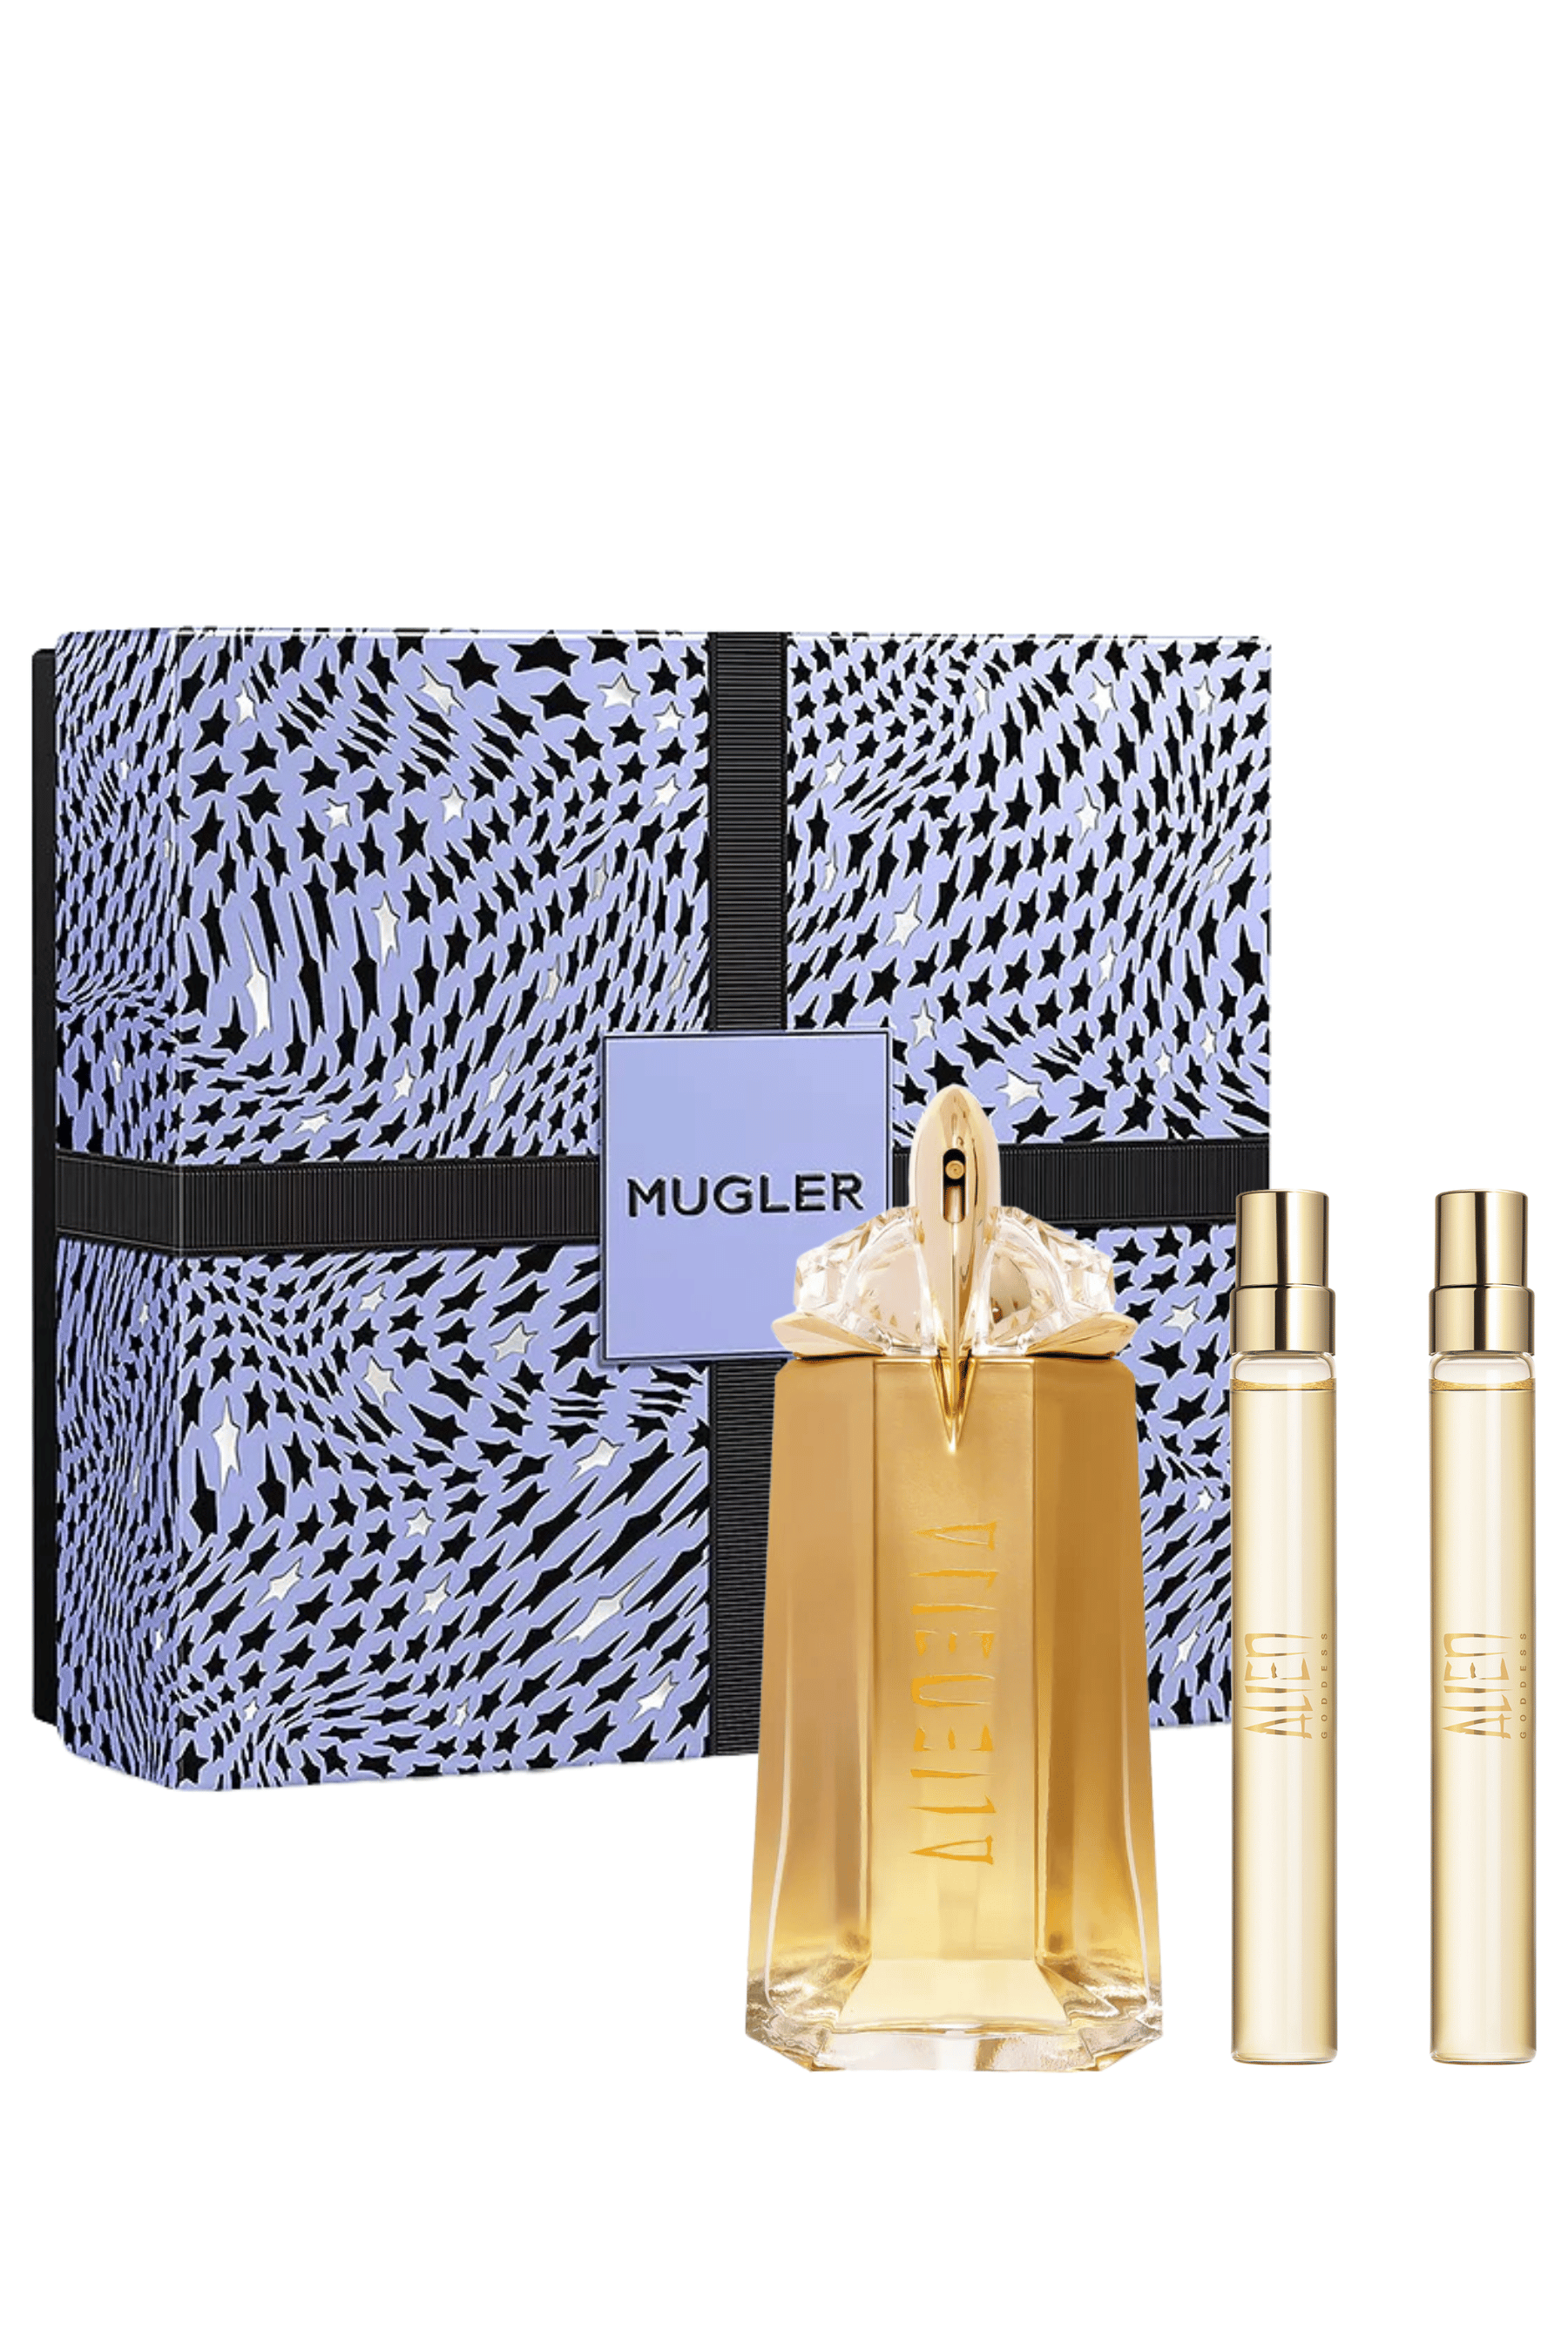 Mugler | Alien Goddess Eau de Parfum 3 Pc Set